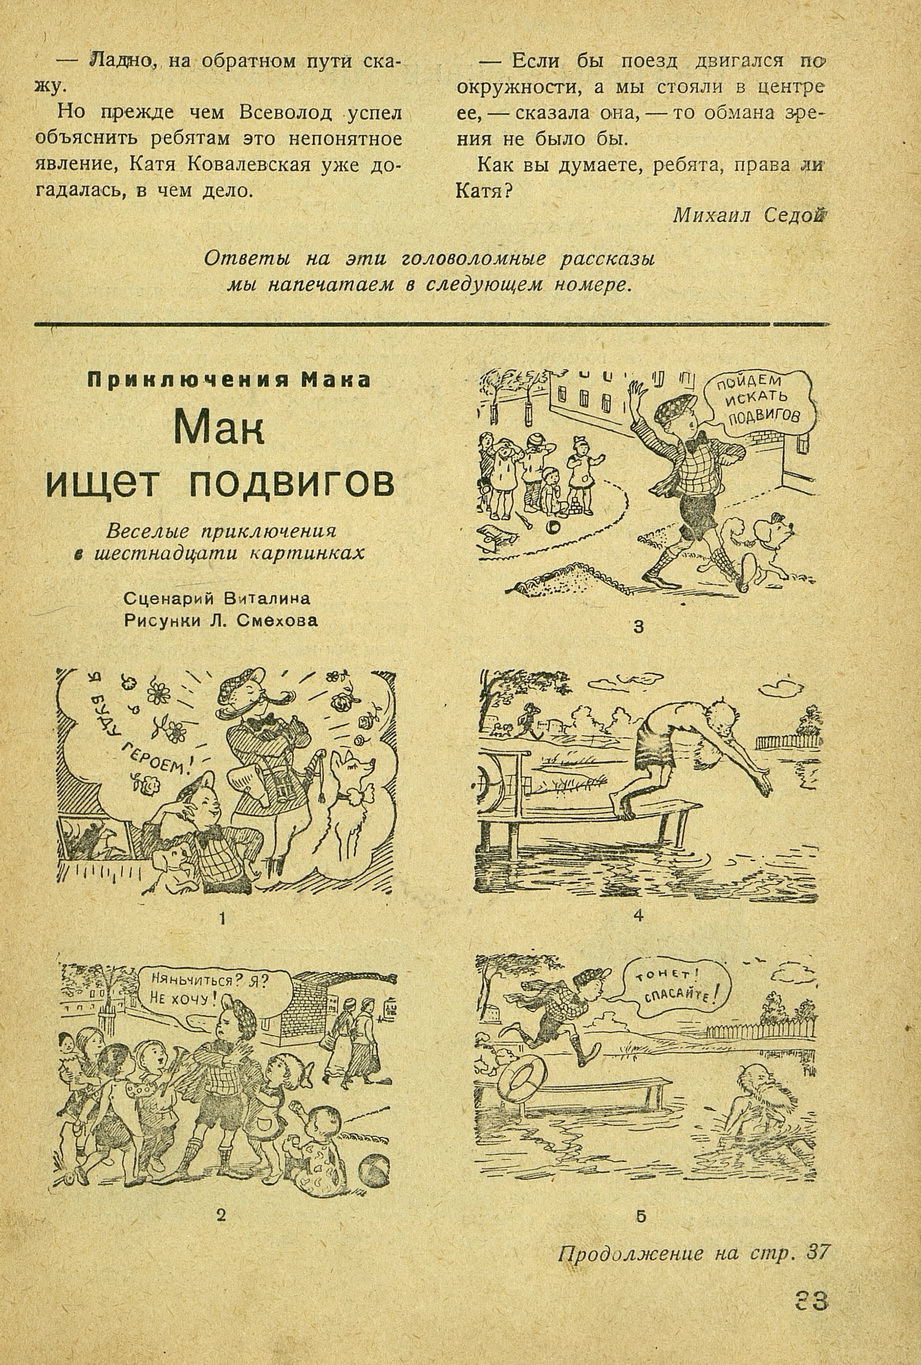 Приключения Мака-1, Затейник №2 1938.jpg